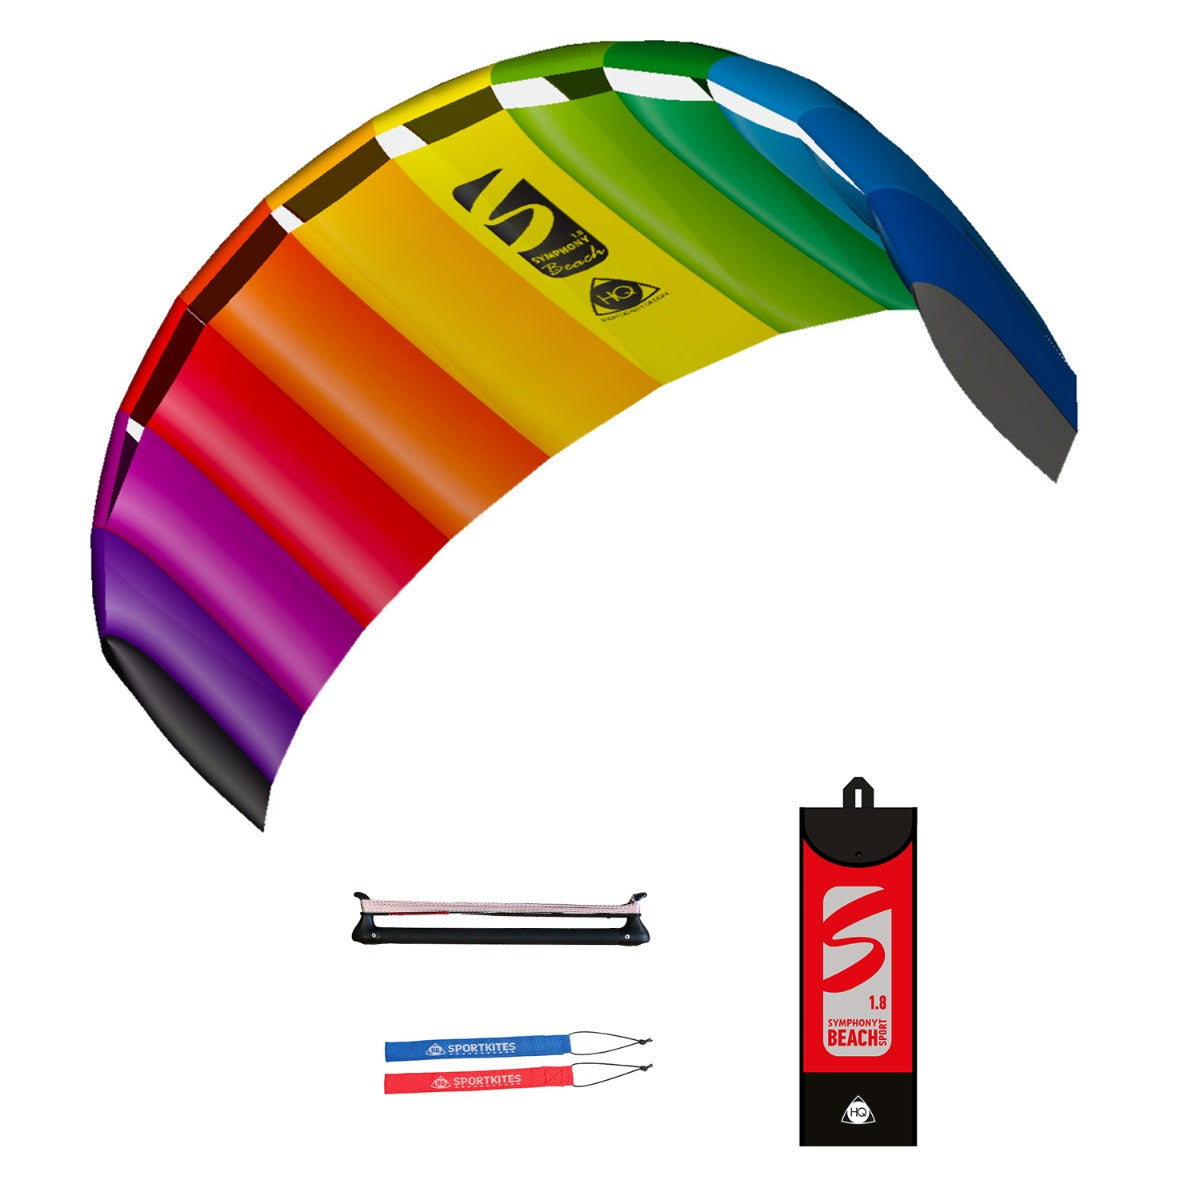 Lenkmatte HQ Symphony Beach III 1.8 Sport PLUS Rainbow mit Controlbar und Lenkschlaufen Allround Lenkdrachen Kite